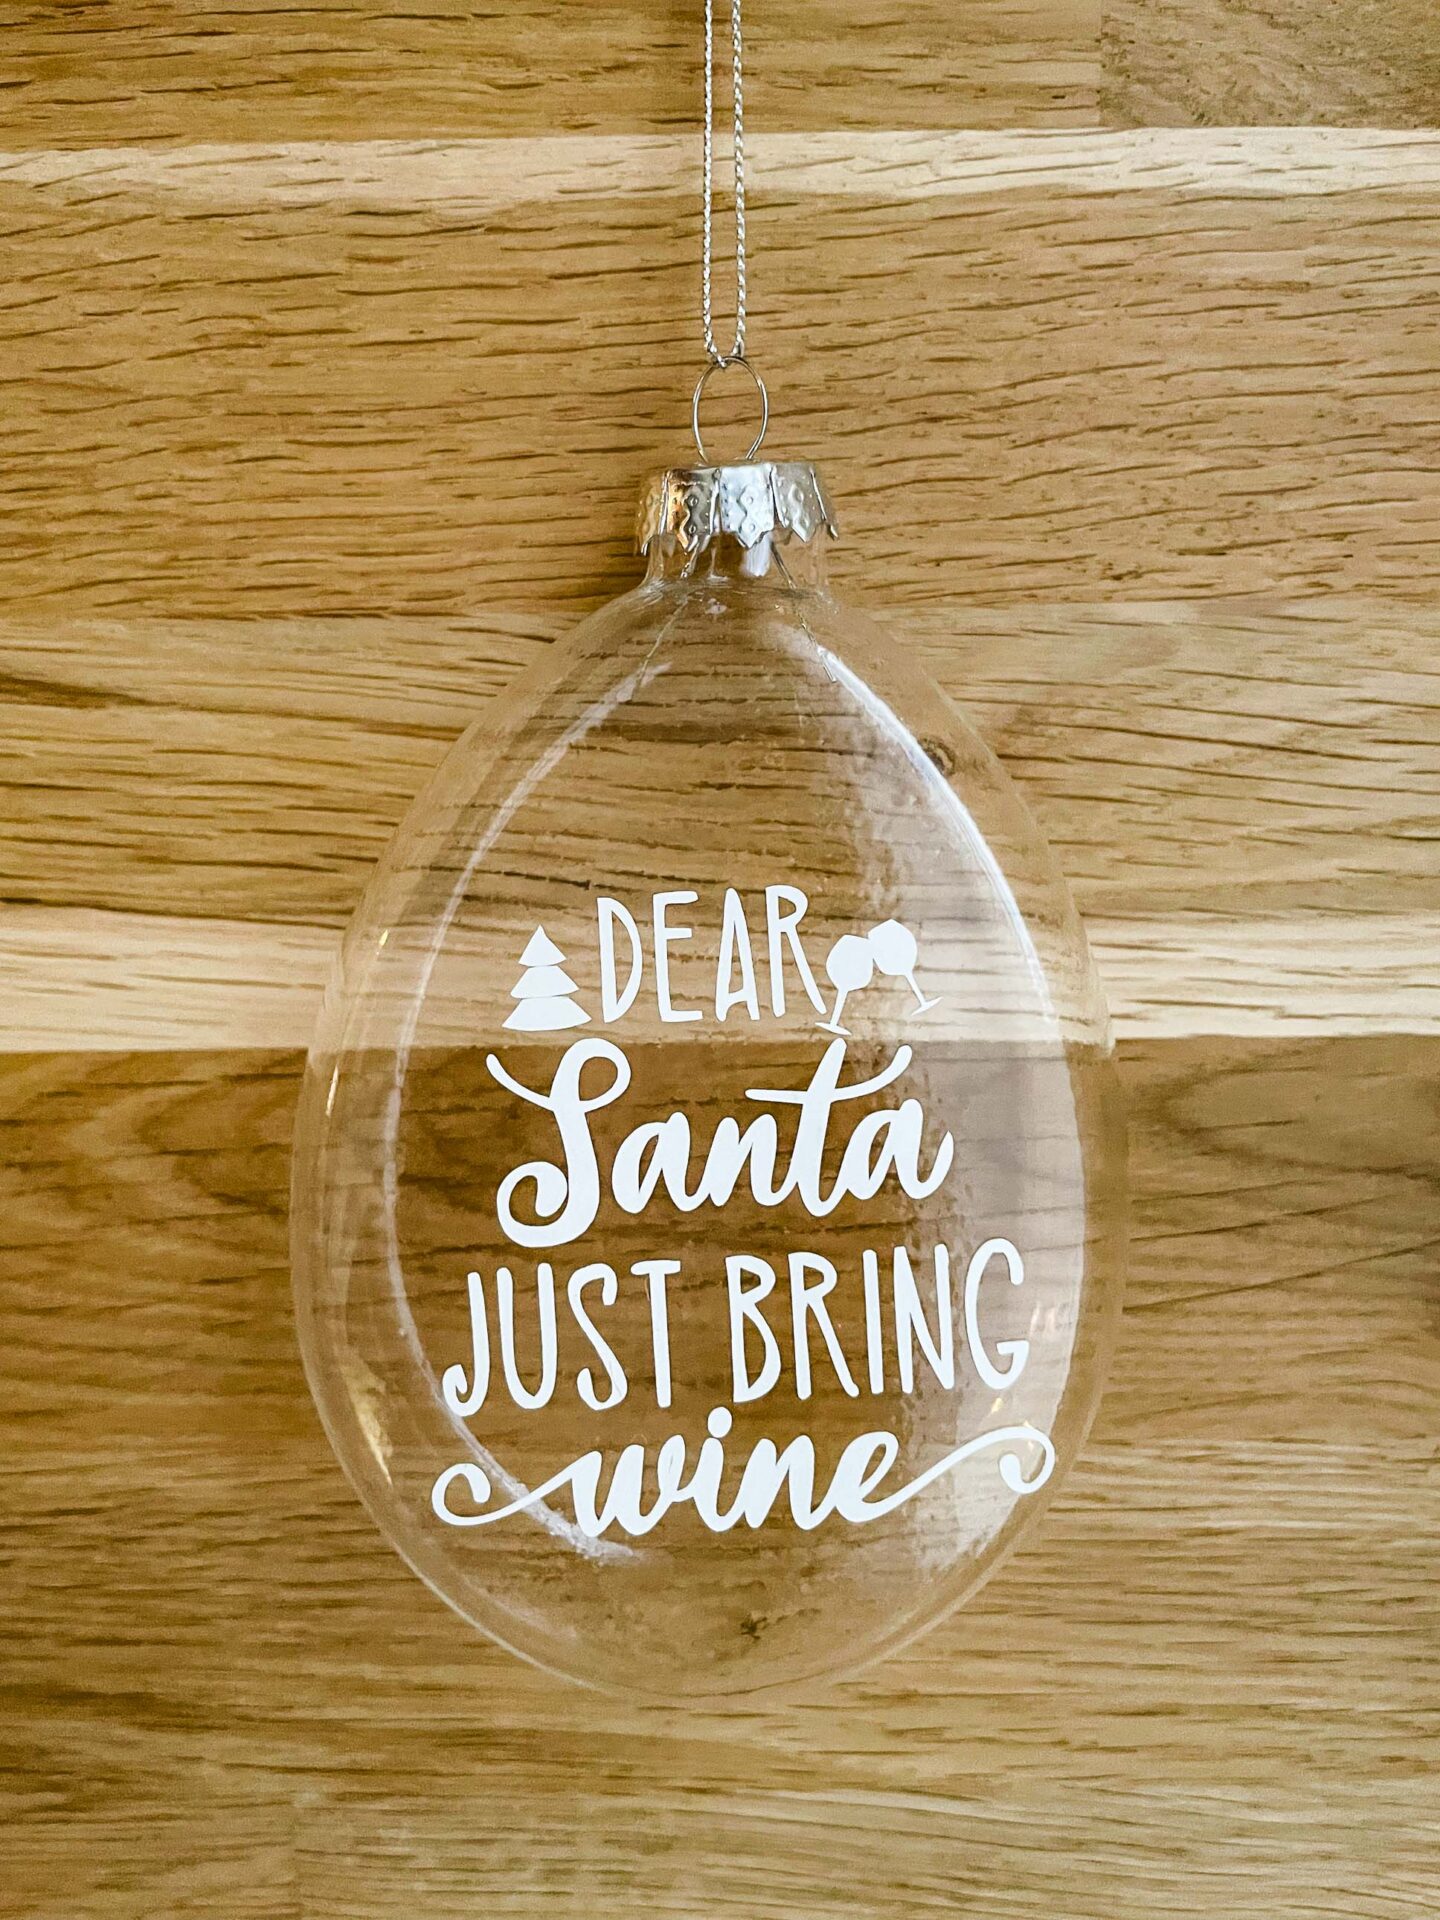 Boules de Sapin de Noël transparentes - Boules de Noël originales pour le sapin de Noël - Boutique en ligne d'idées cadeaux pour les fêtes de Noël et de décoration pour les fêtes de fin d'année. Inscription: Dear Santa just bring wine